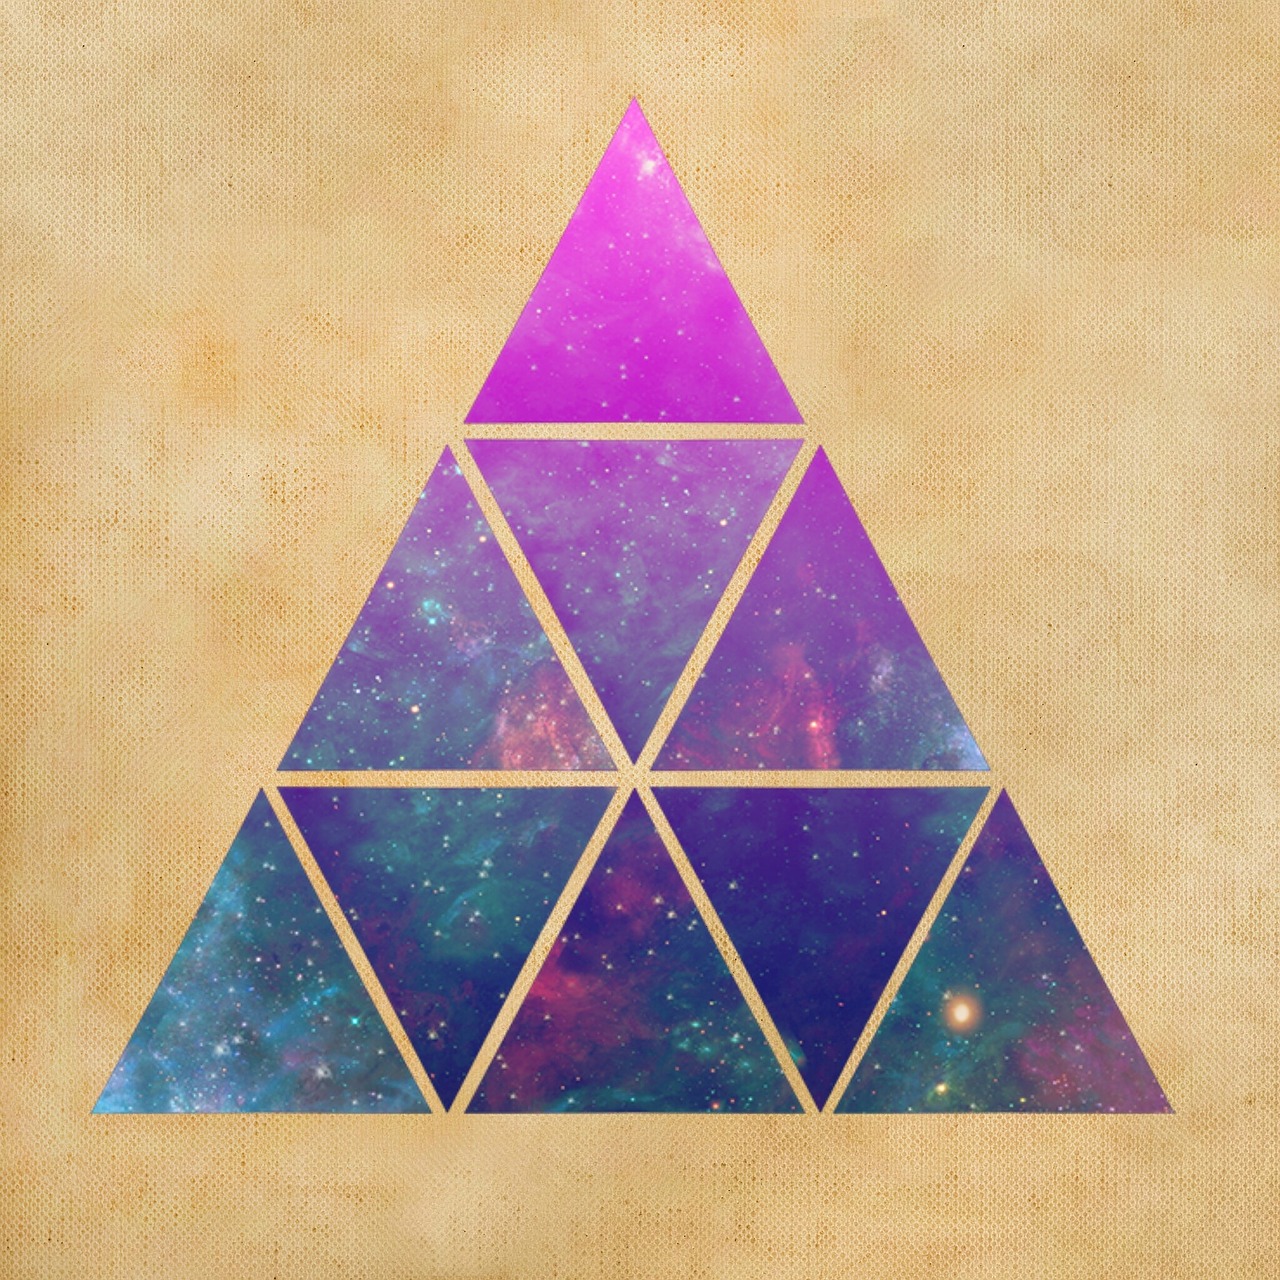 Géométrie : Les triangles